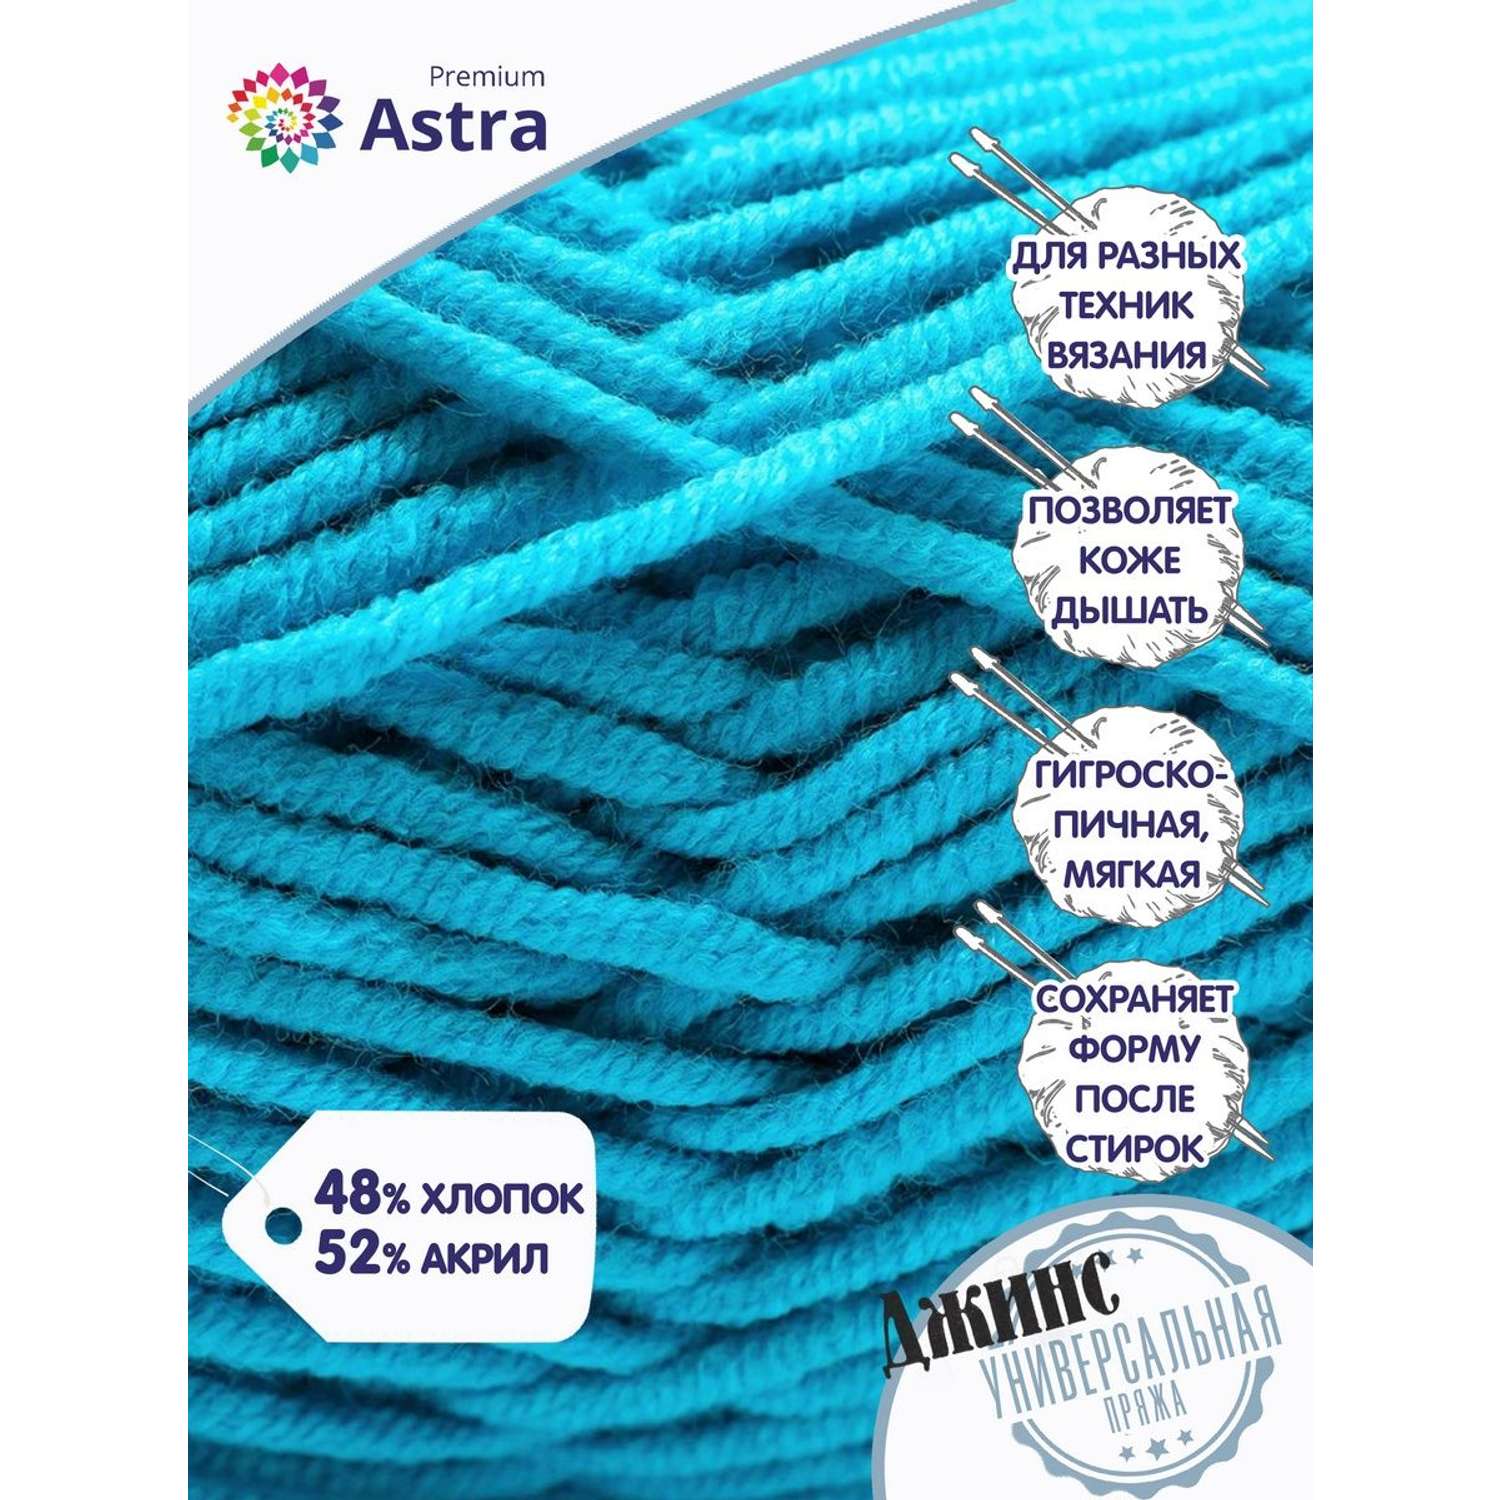 Пряжа для вязания Astra Premium джинс для повседневной одежды акрил хлопок 50 гр 135 м 505 бирюзовый 4 мотка - фото 2